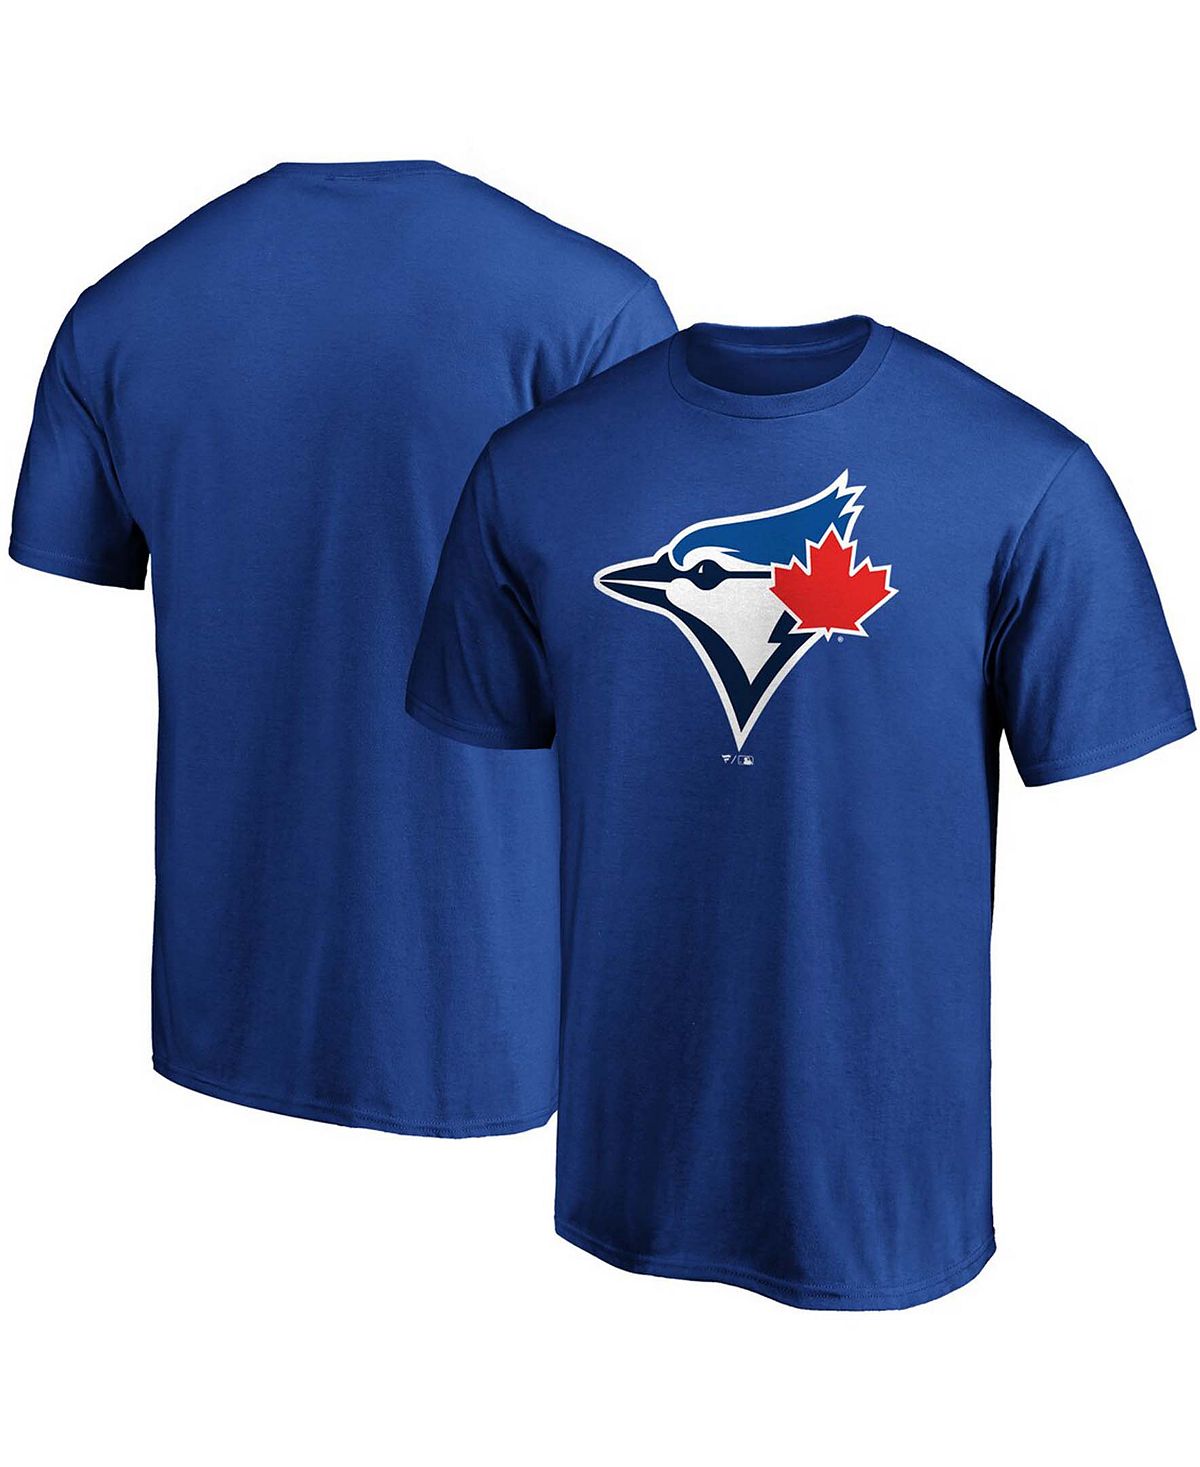 цена Мужская футболка с официальным логотипом royal toronto blue jays Fanatics